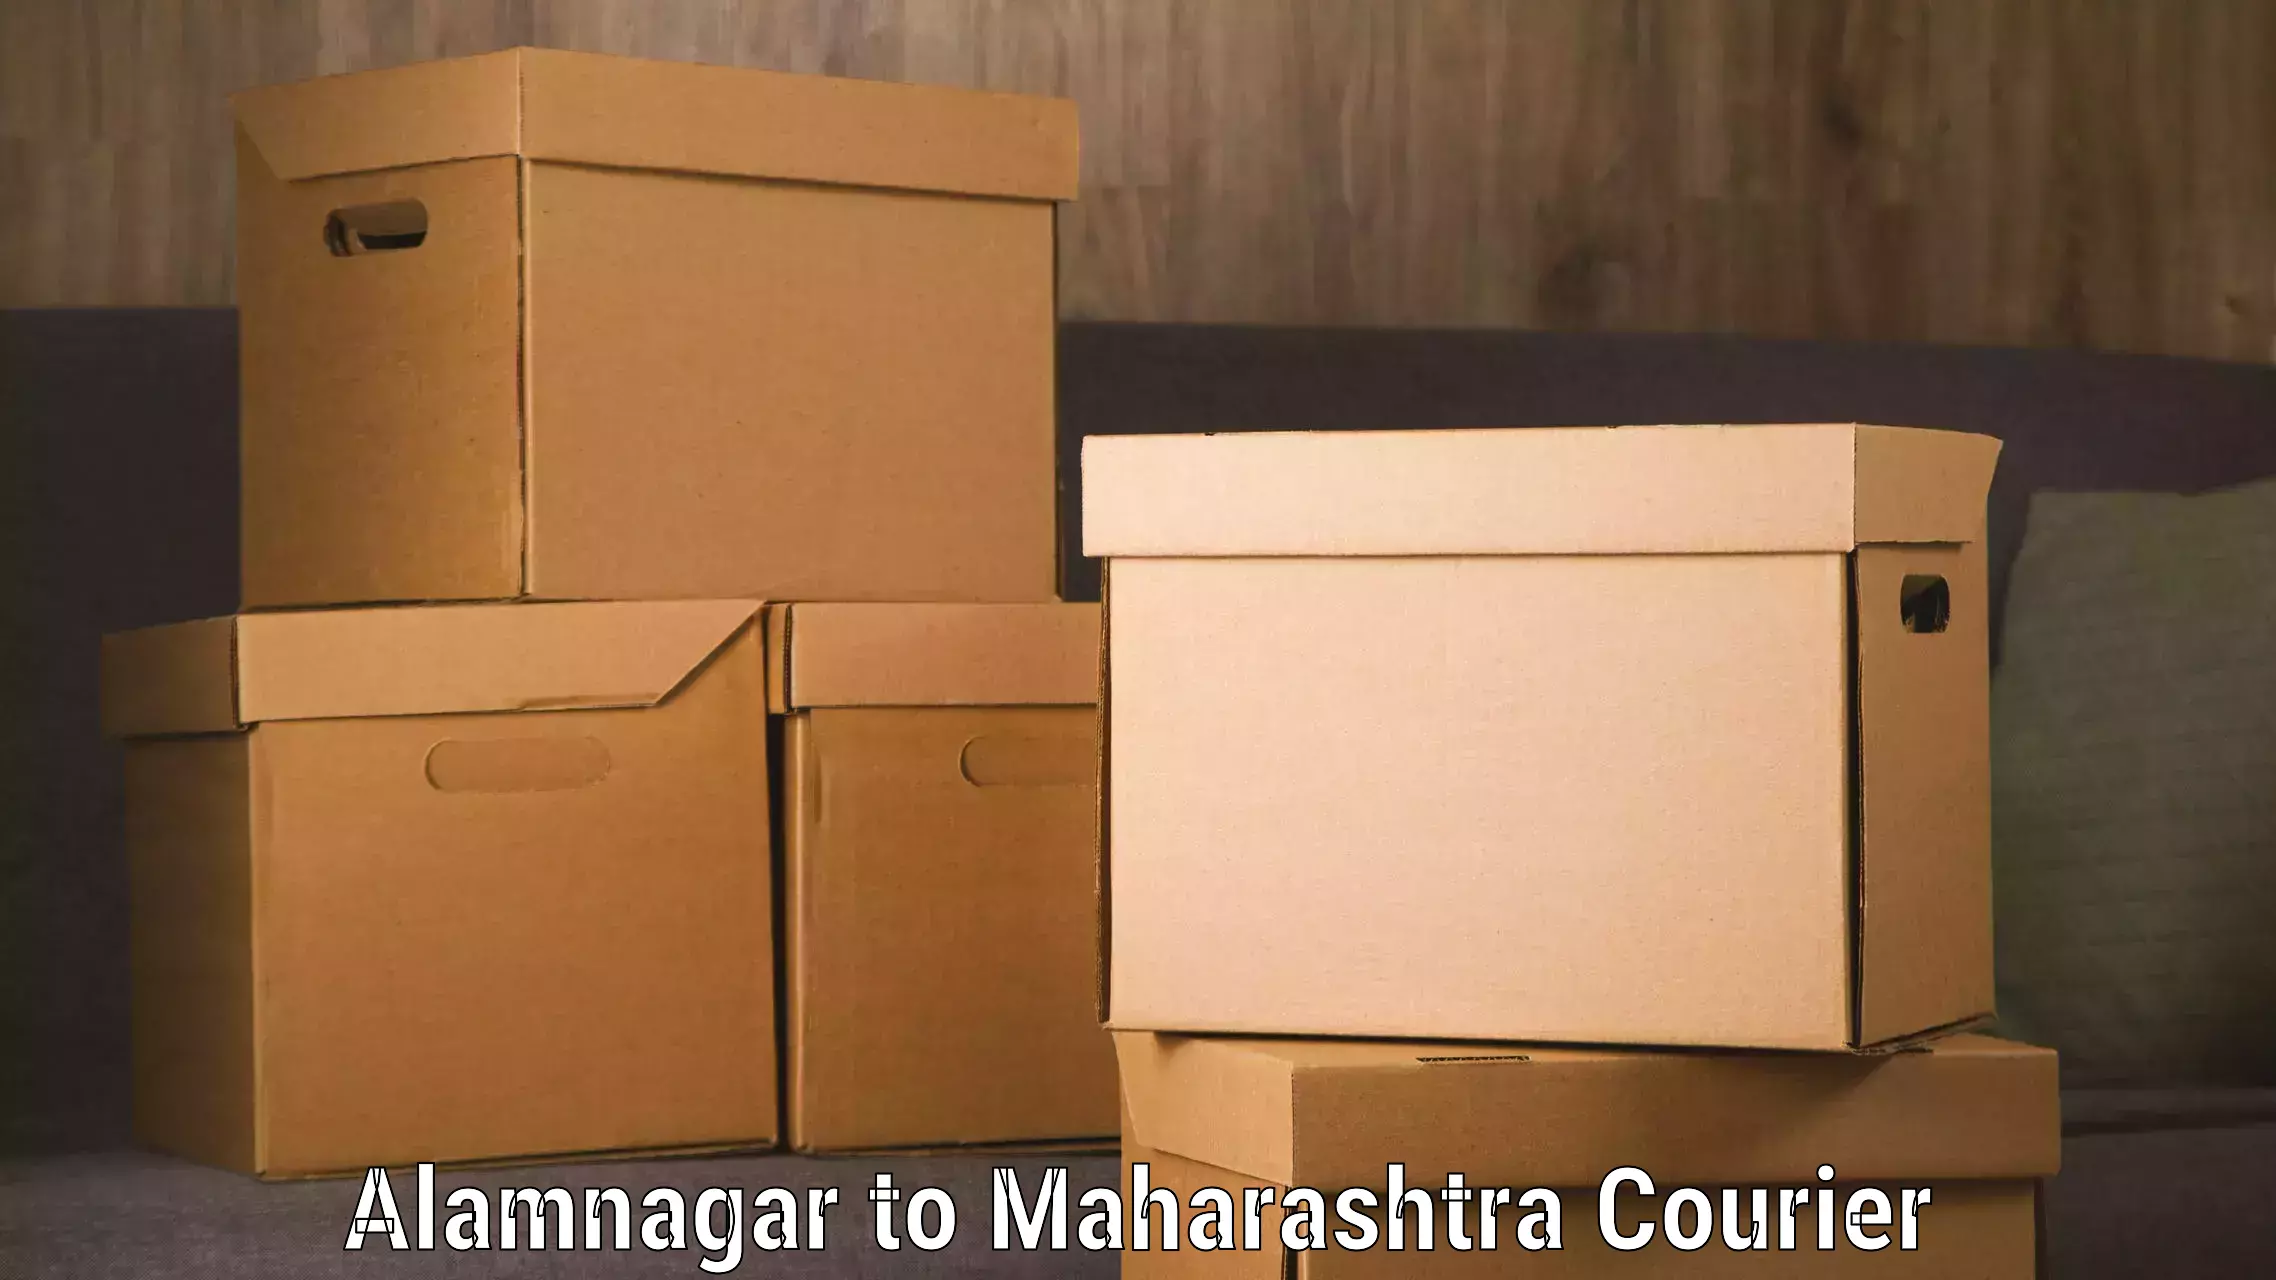 Baggage shipping service Alamnagar to Maharashtra